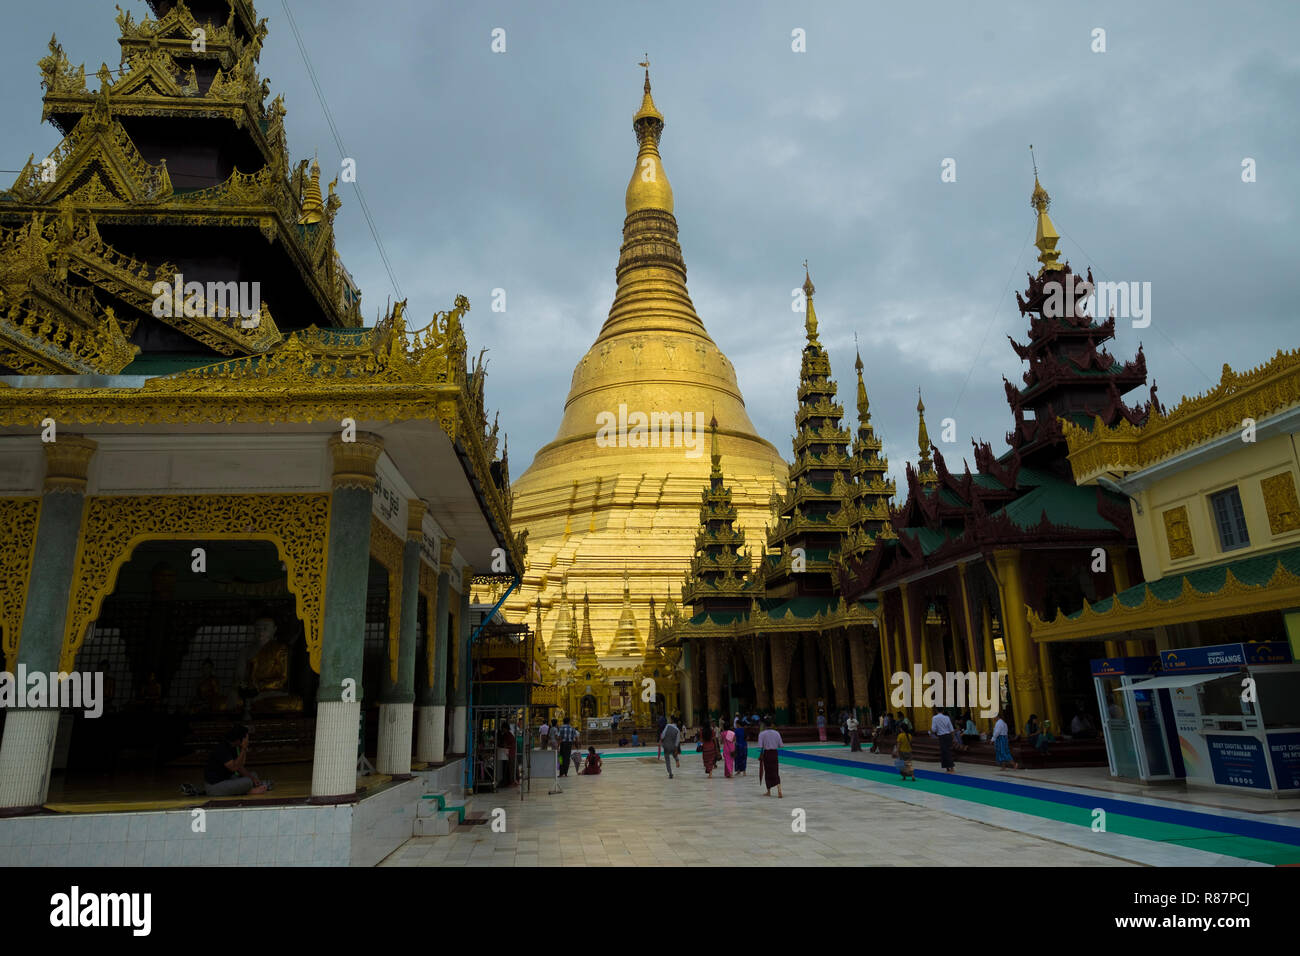 View of the big Shwedagon Pagoda in Yangon, Myanmar. Stock Photo